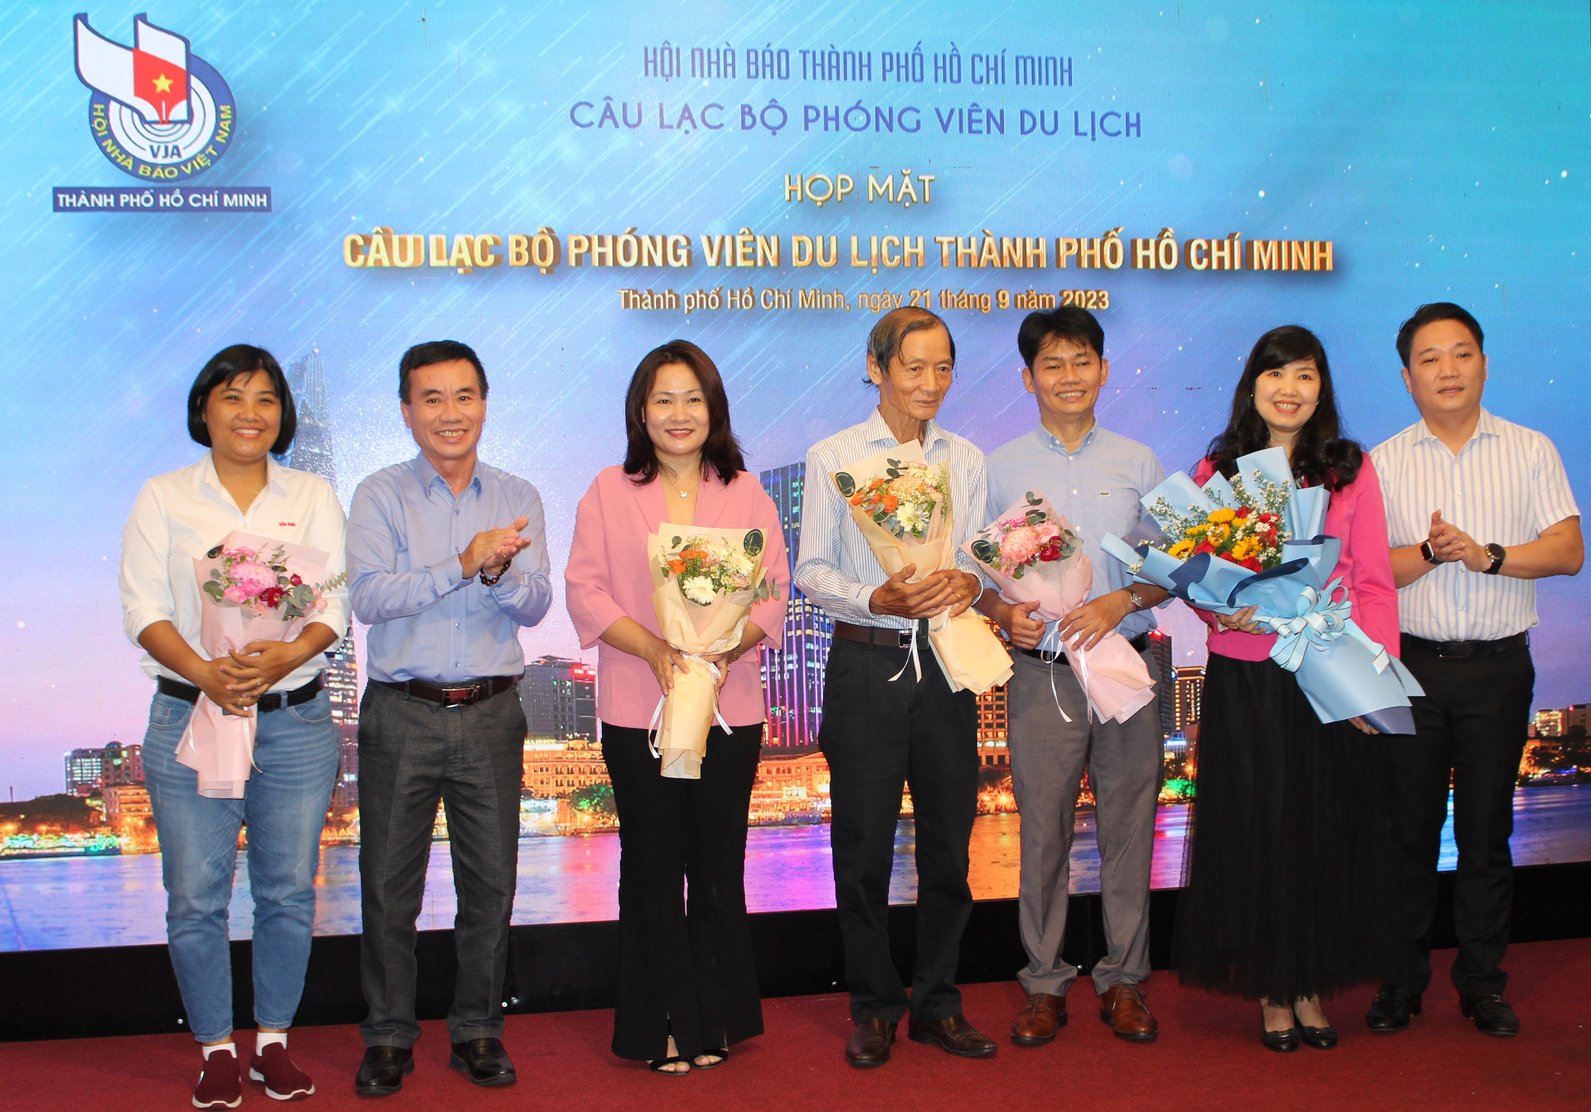 Ra mắt Ban Chủ nhiệm Câu lạc bộ Phóng viên Du lịch TP.HCM 2023 - 2028. Ảnh: Nguyễn Thủy.